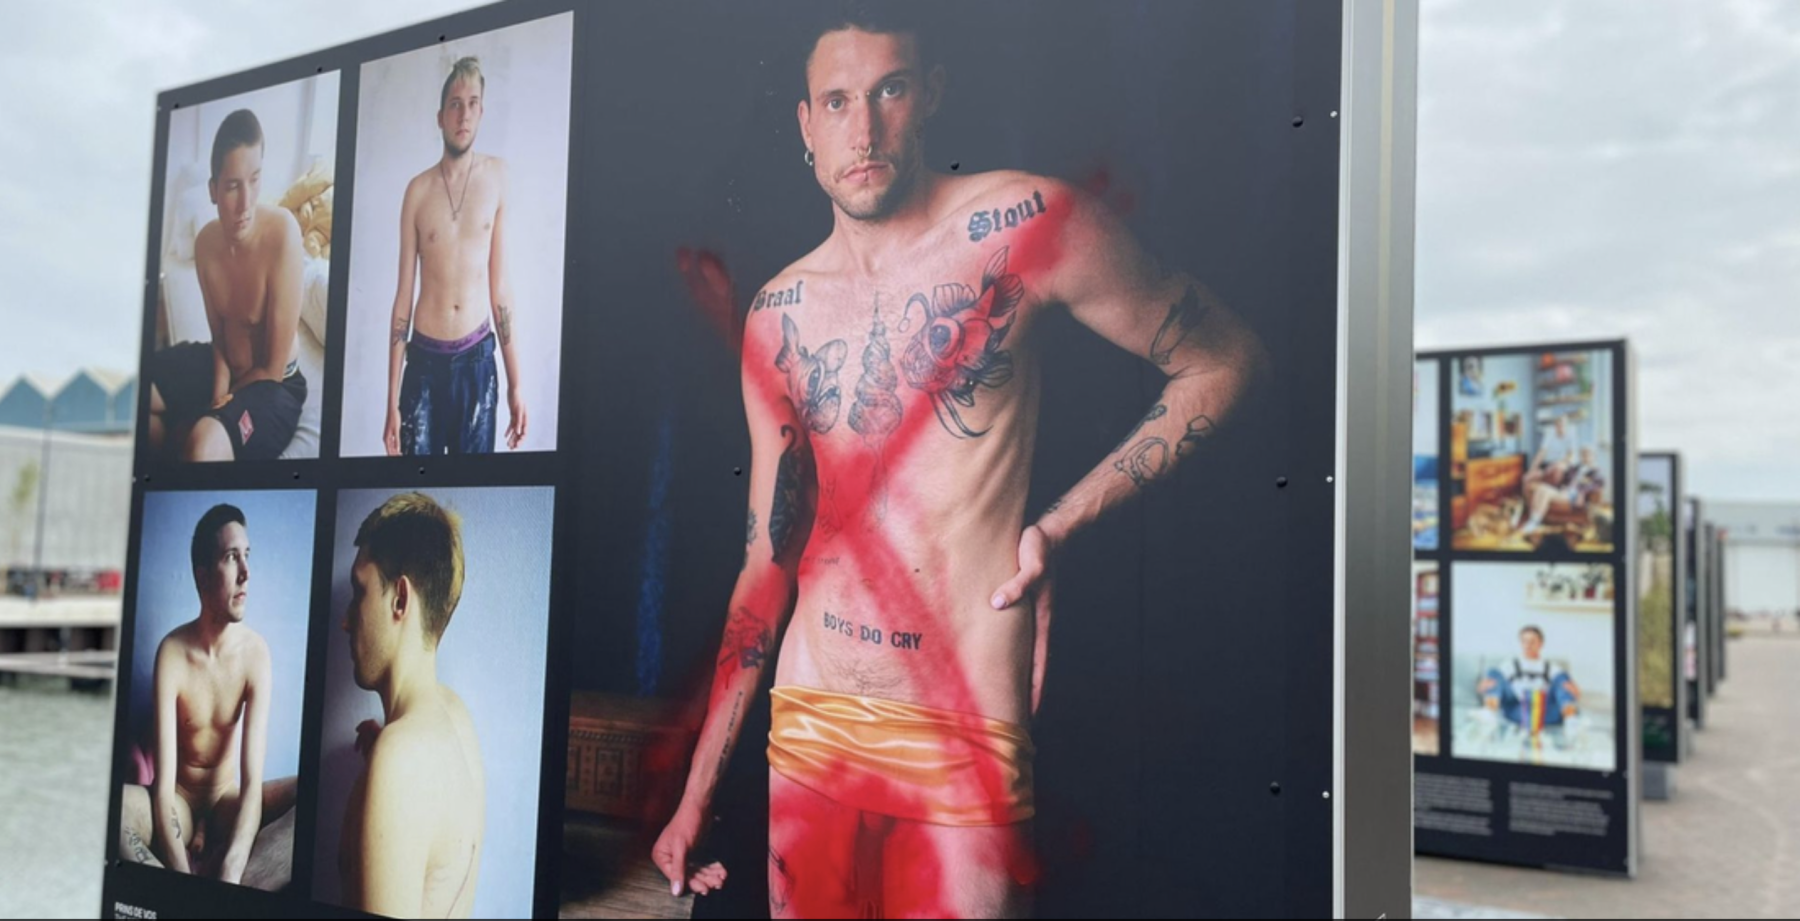 Pride-foto's met zoenende mannen beklad in Vlissingen